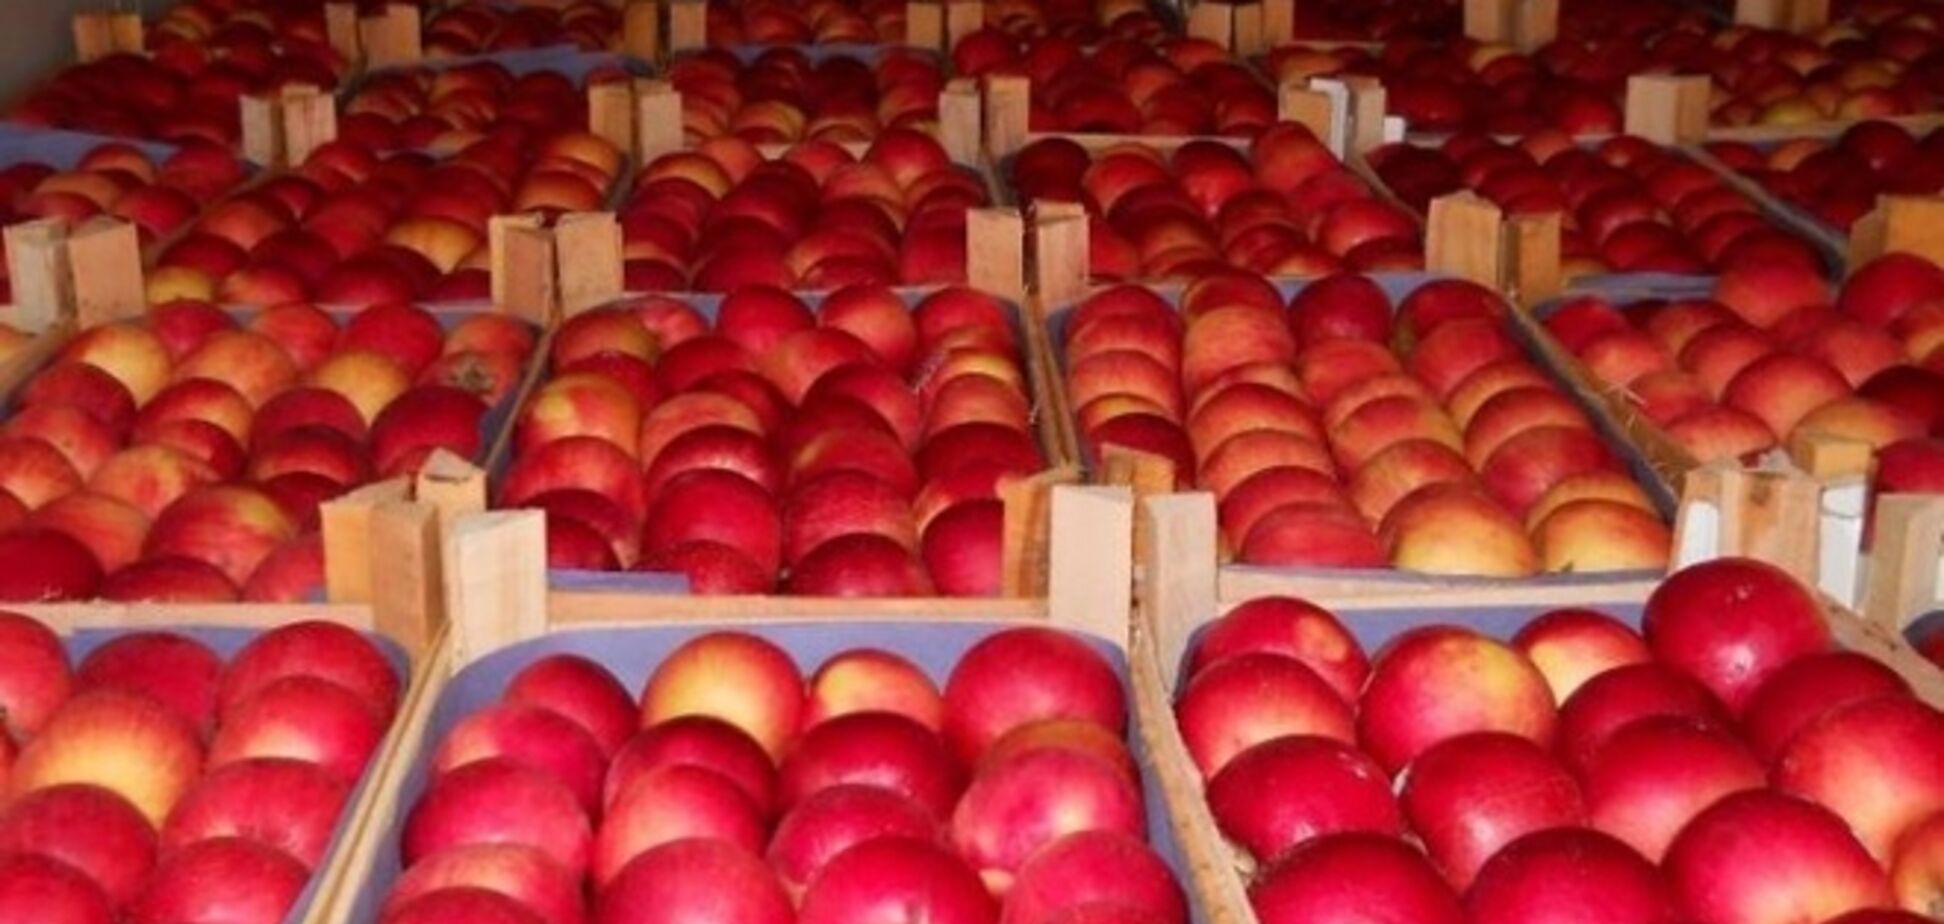 Россия вернула в Беларусь 190 тонн яблок из Польши и Молдовы